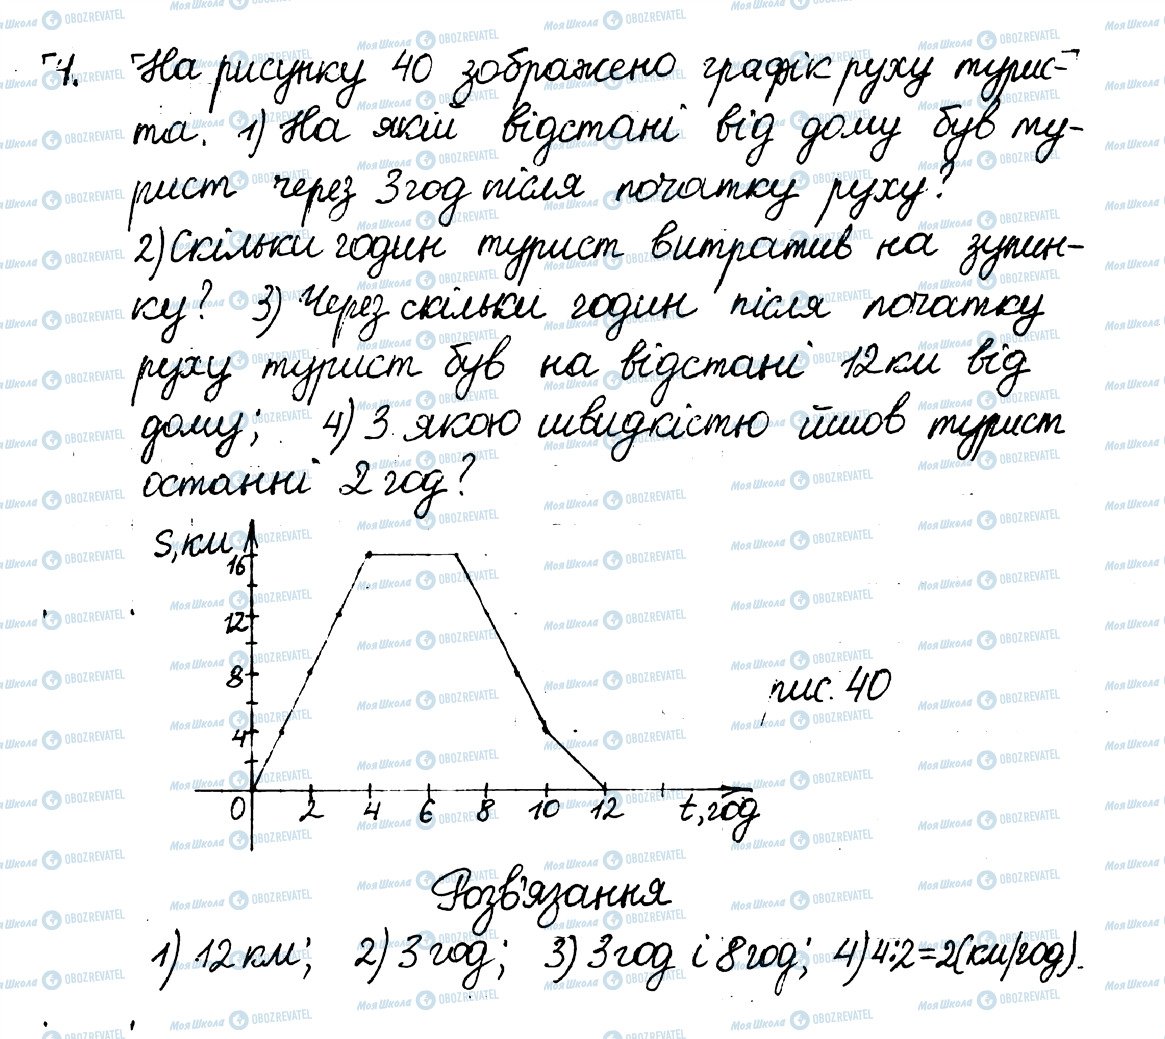 ГДЗ Математика 6 класс страница 4